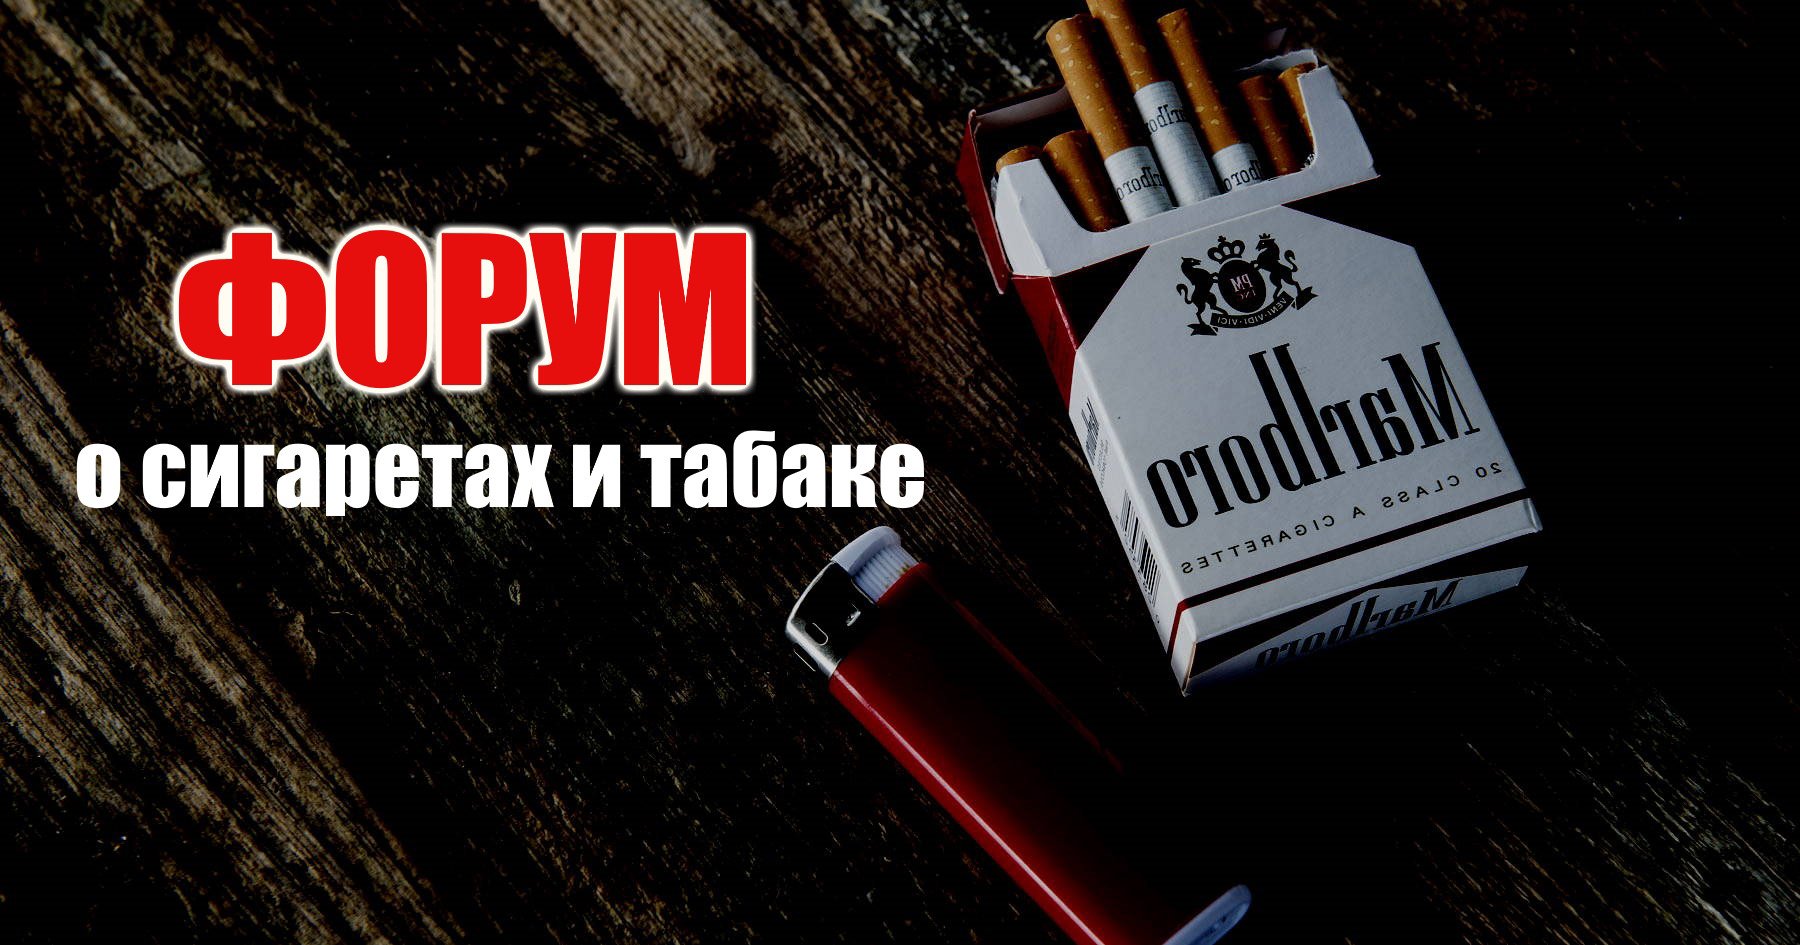 Всероссийский форум о сигаретах